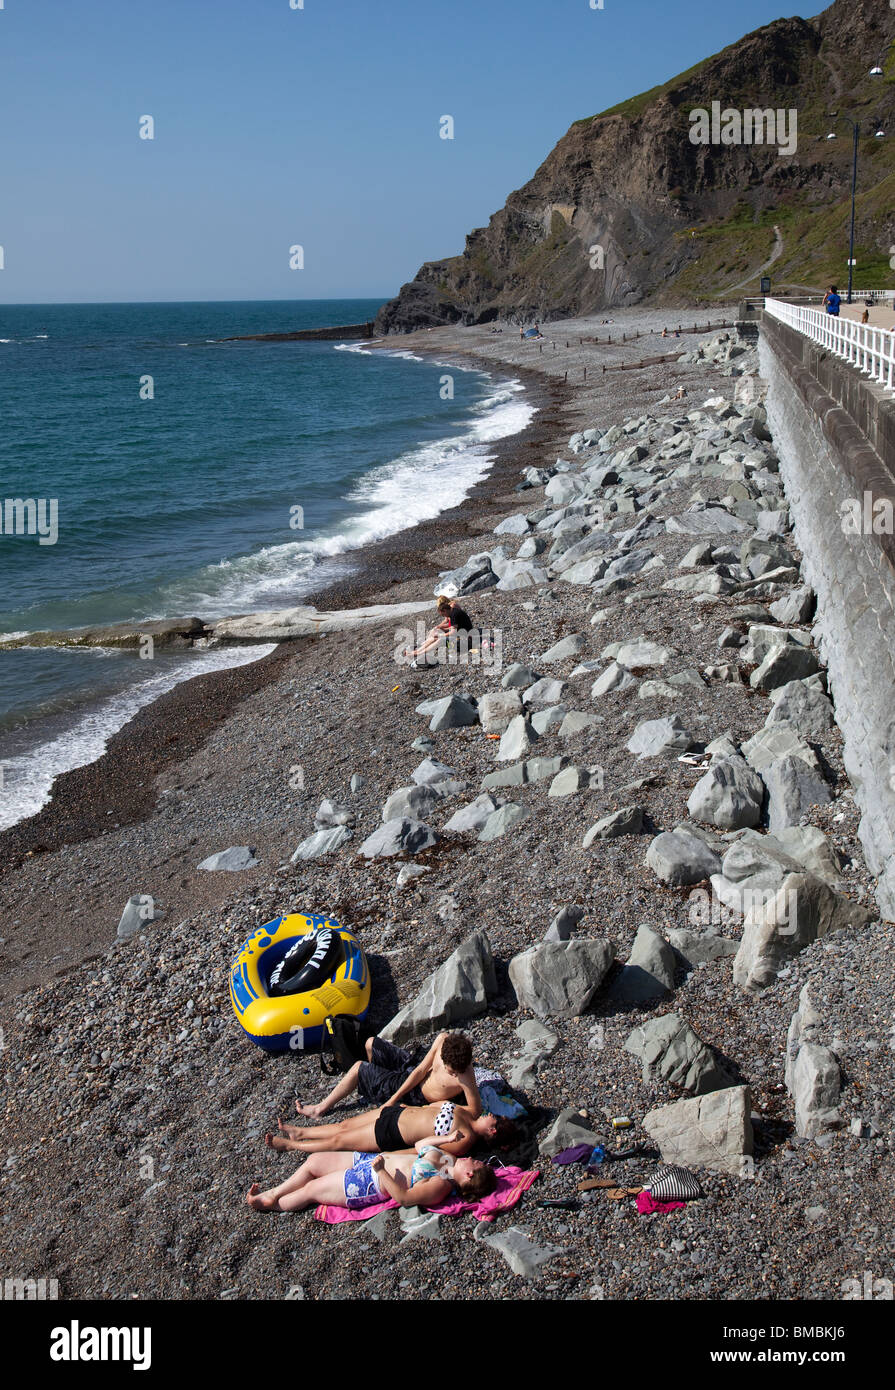 Les gens en train de bronzer sur une plage Aberystwyth Wales UK Banque D'Images